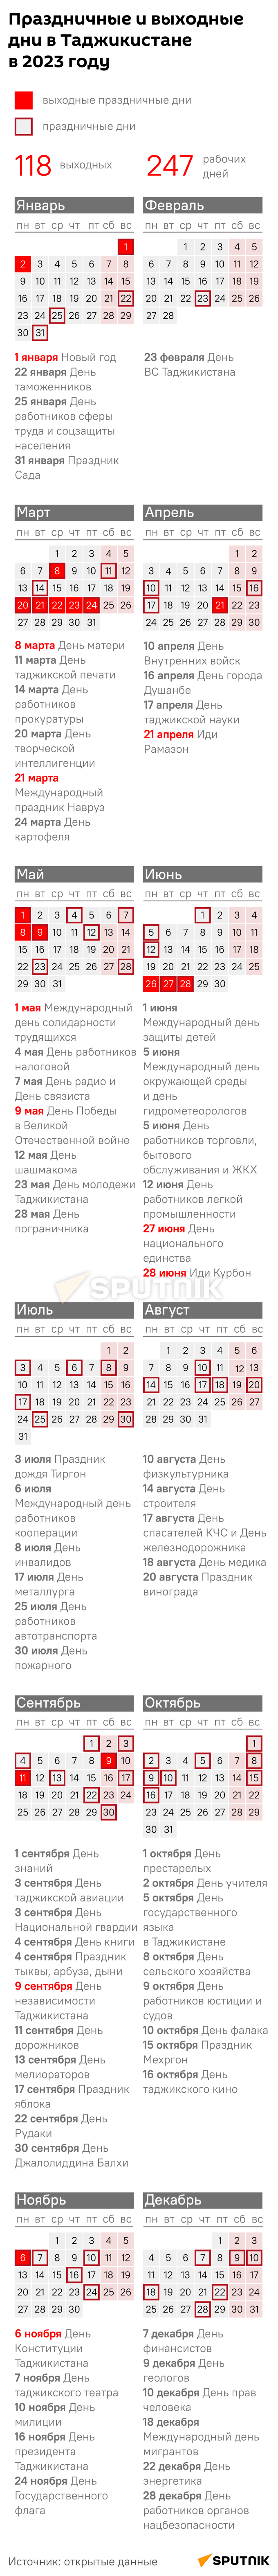 Праздничные и выходные дни  в Таджикистане в 2023 году - Sputnik Таджикистан